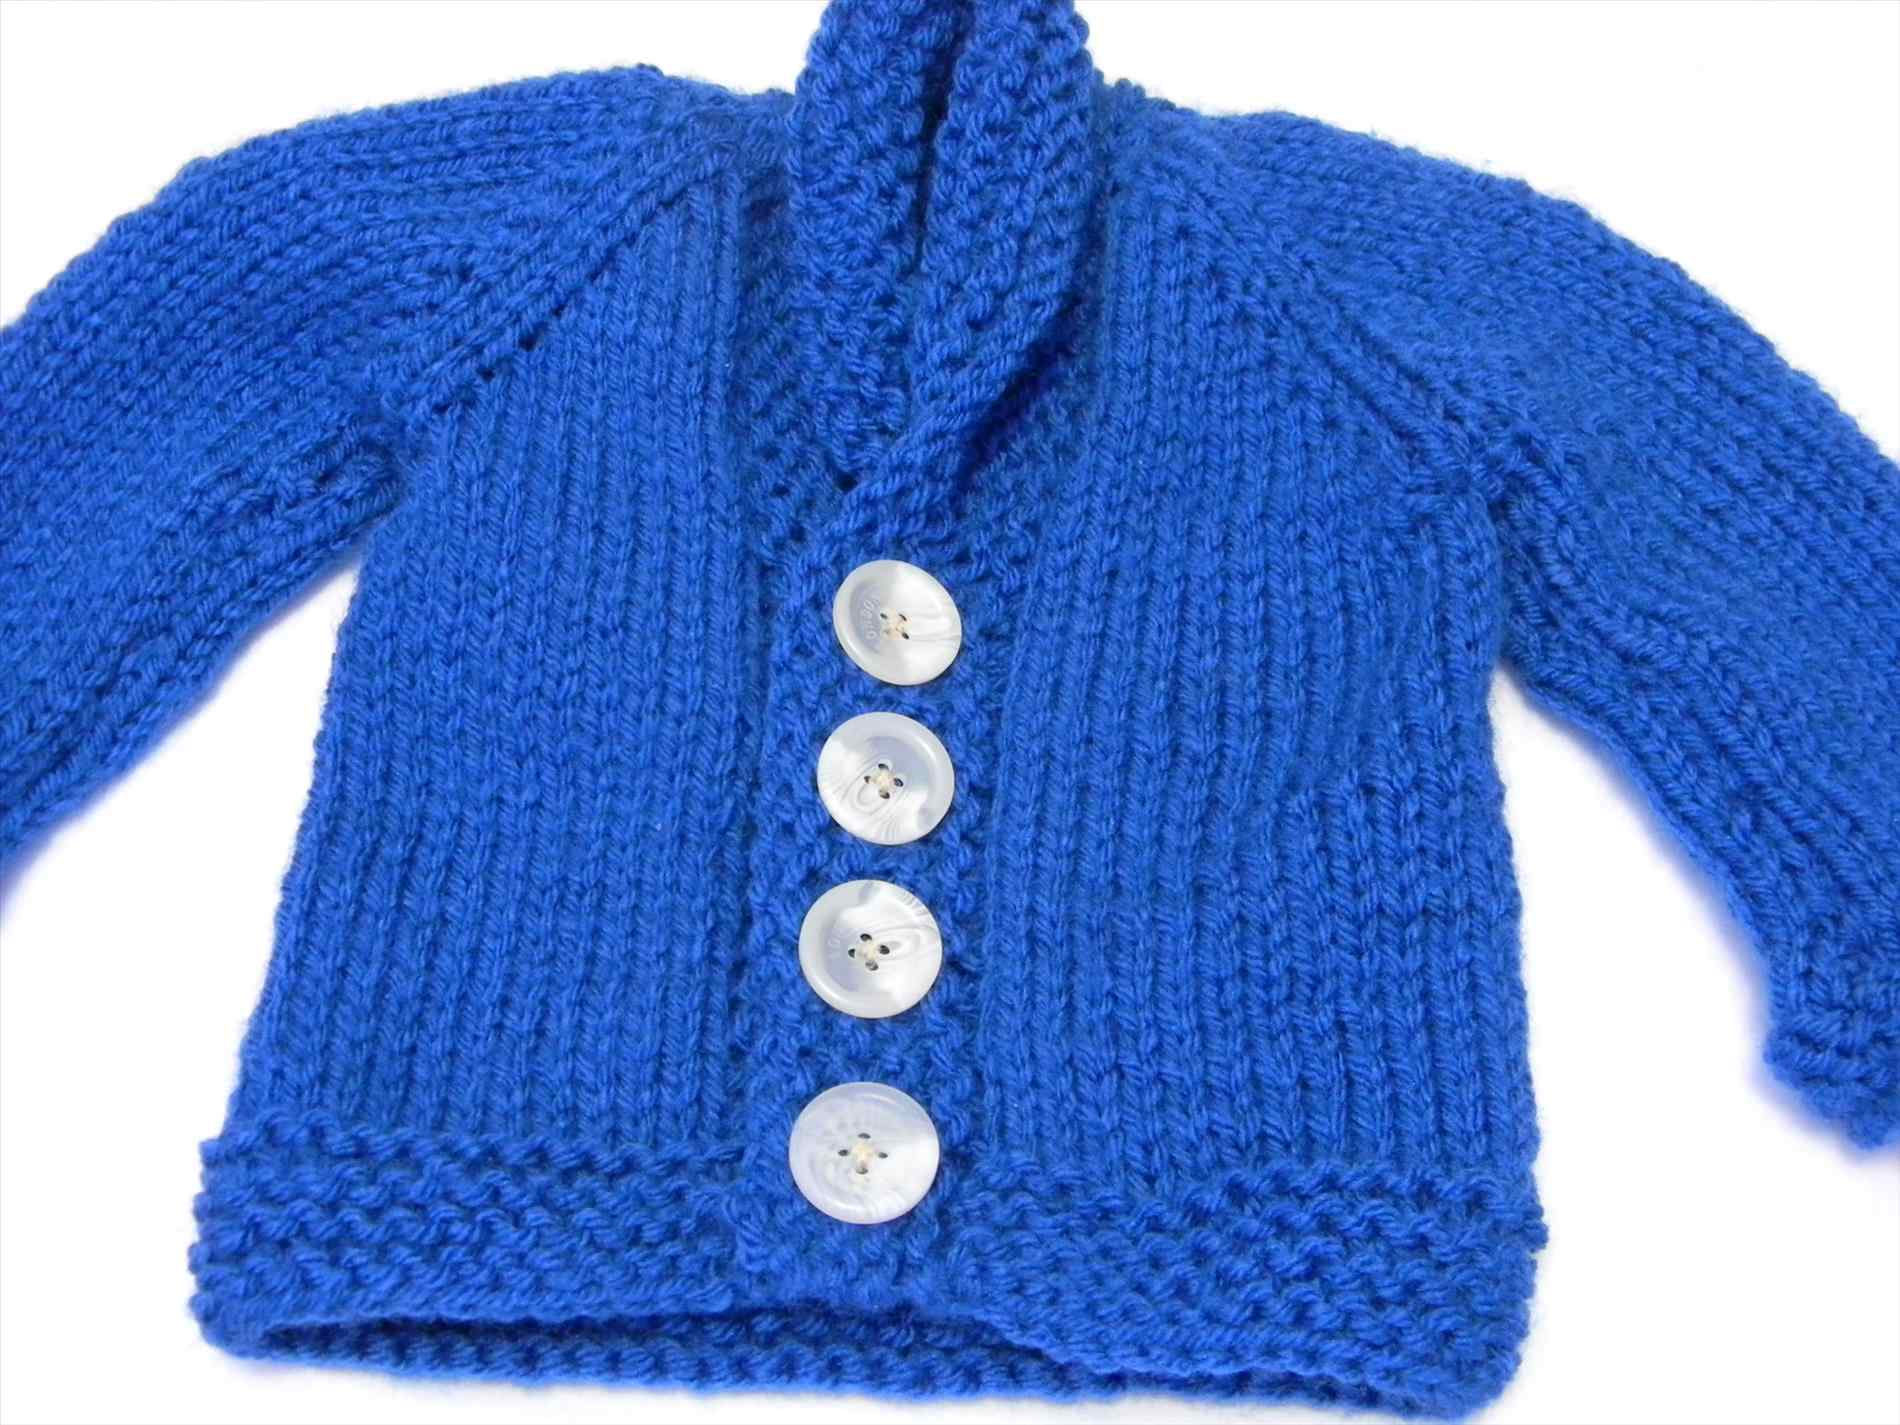 Crochet Baby Boy Sweater Pattern Free Free Crochet Patterns For Ba Boy Sweaters Inspb